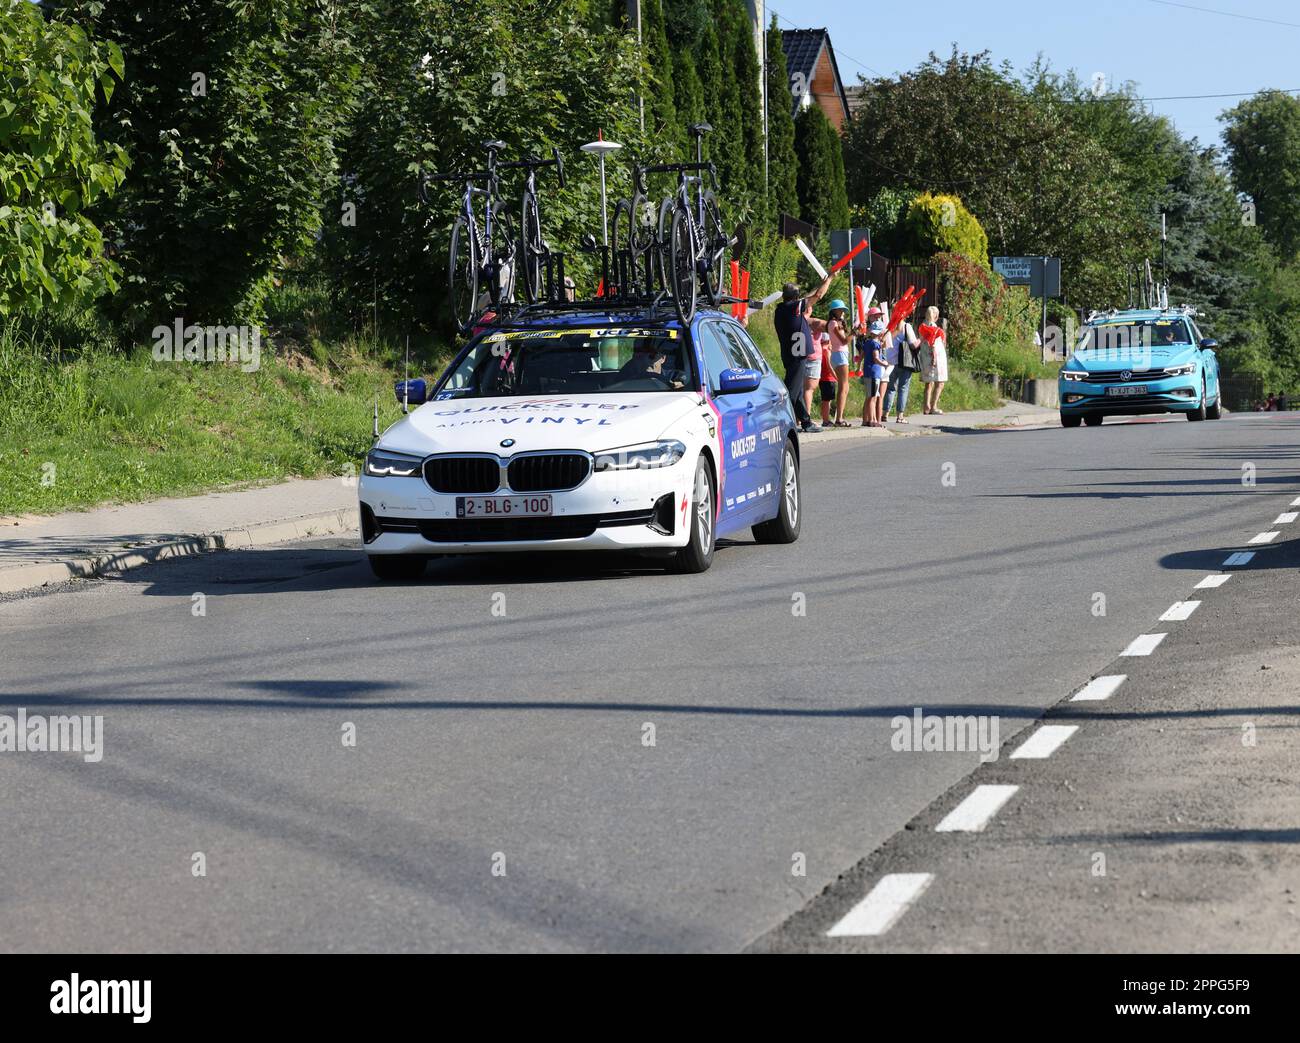 Quick-Step Alpha Vinyl Team veicolo sul percorso del Tour de Pologne UCI â€“ World Tour, tappa 7 Skawina - Cracovia. Foto Stock